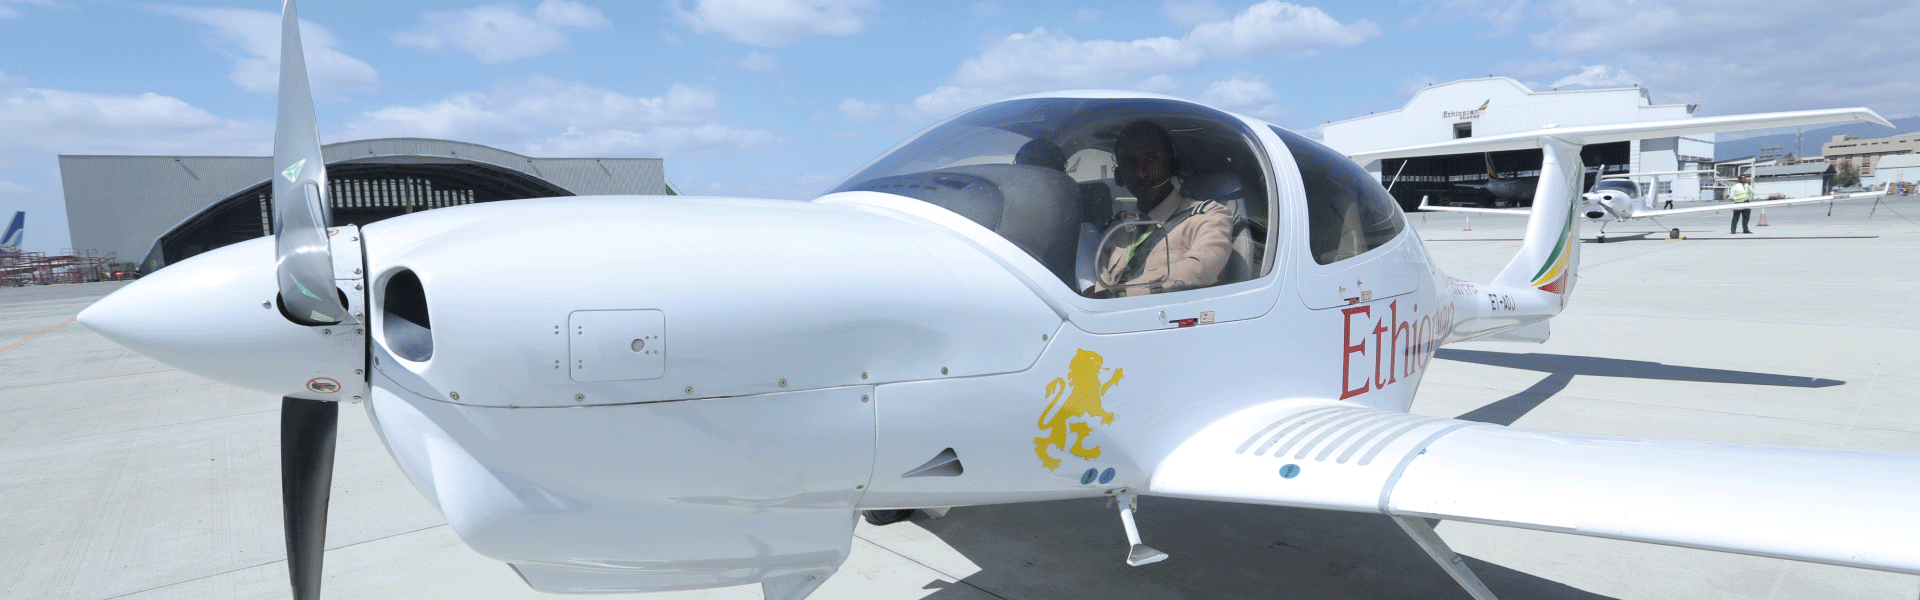 Ethiopian Airlines Flight Training